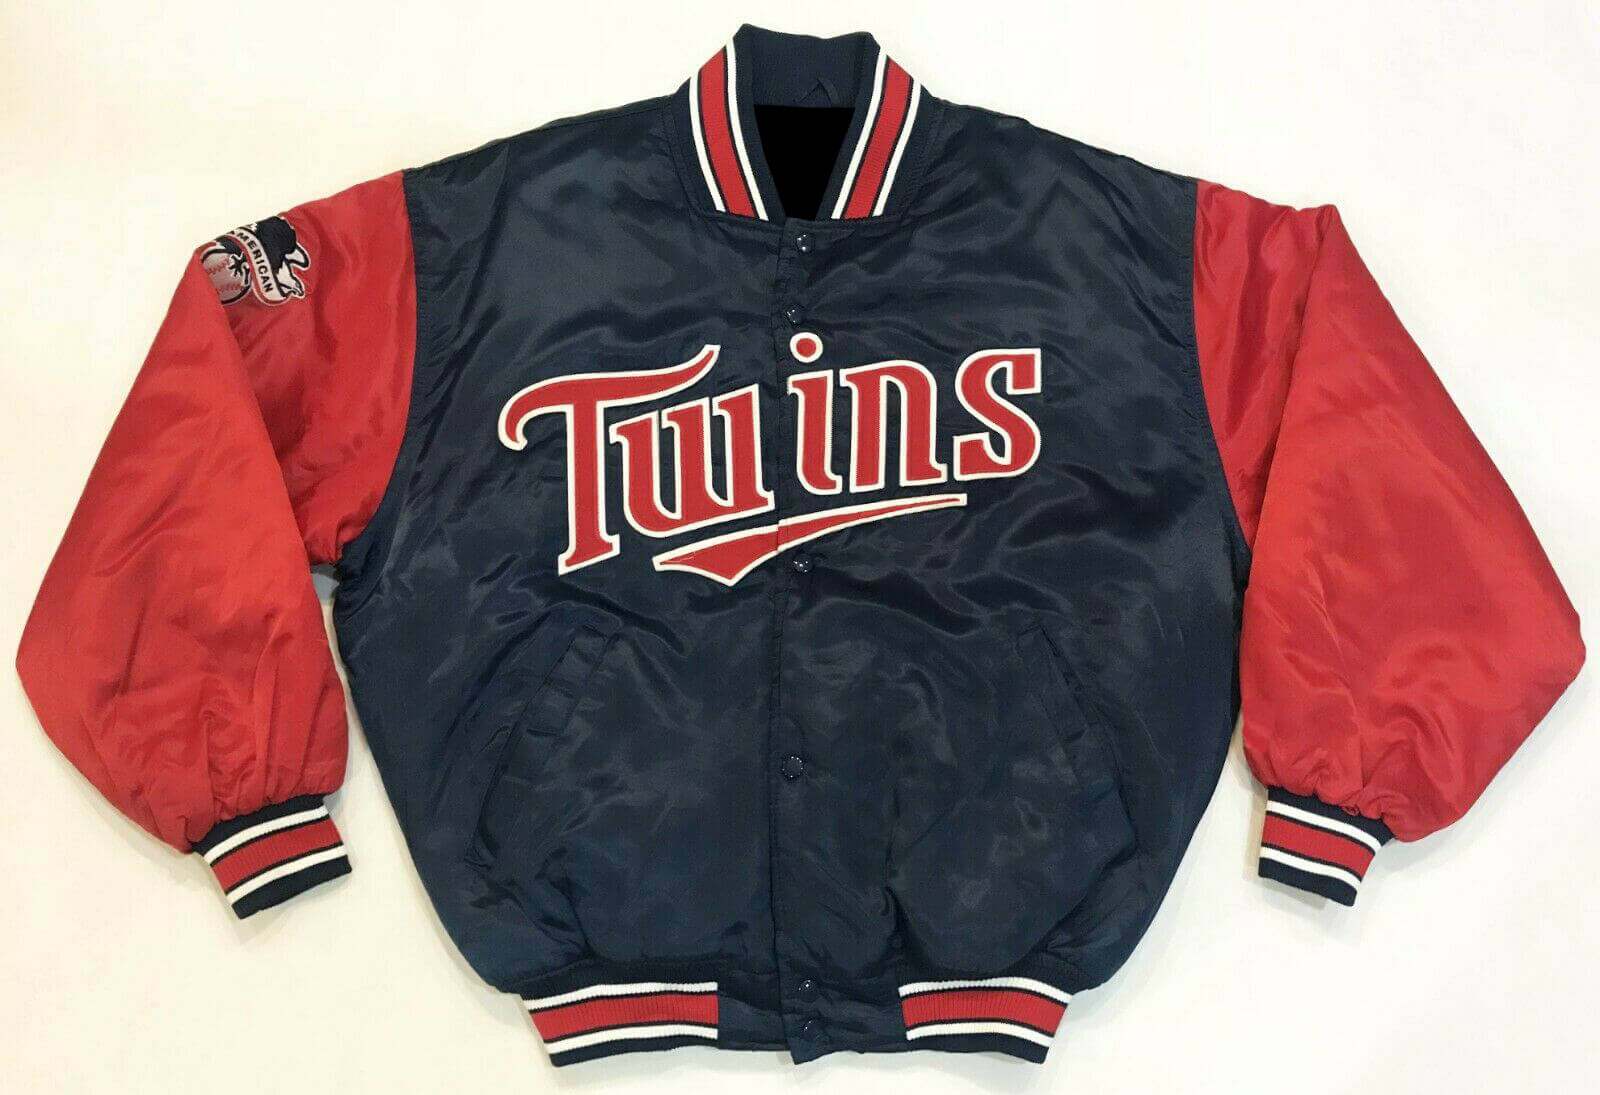 Vintage MLB Minnesota Twins Baseball Satin Jacket - Maker of Jacket